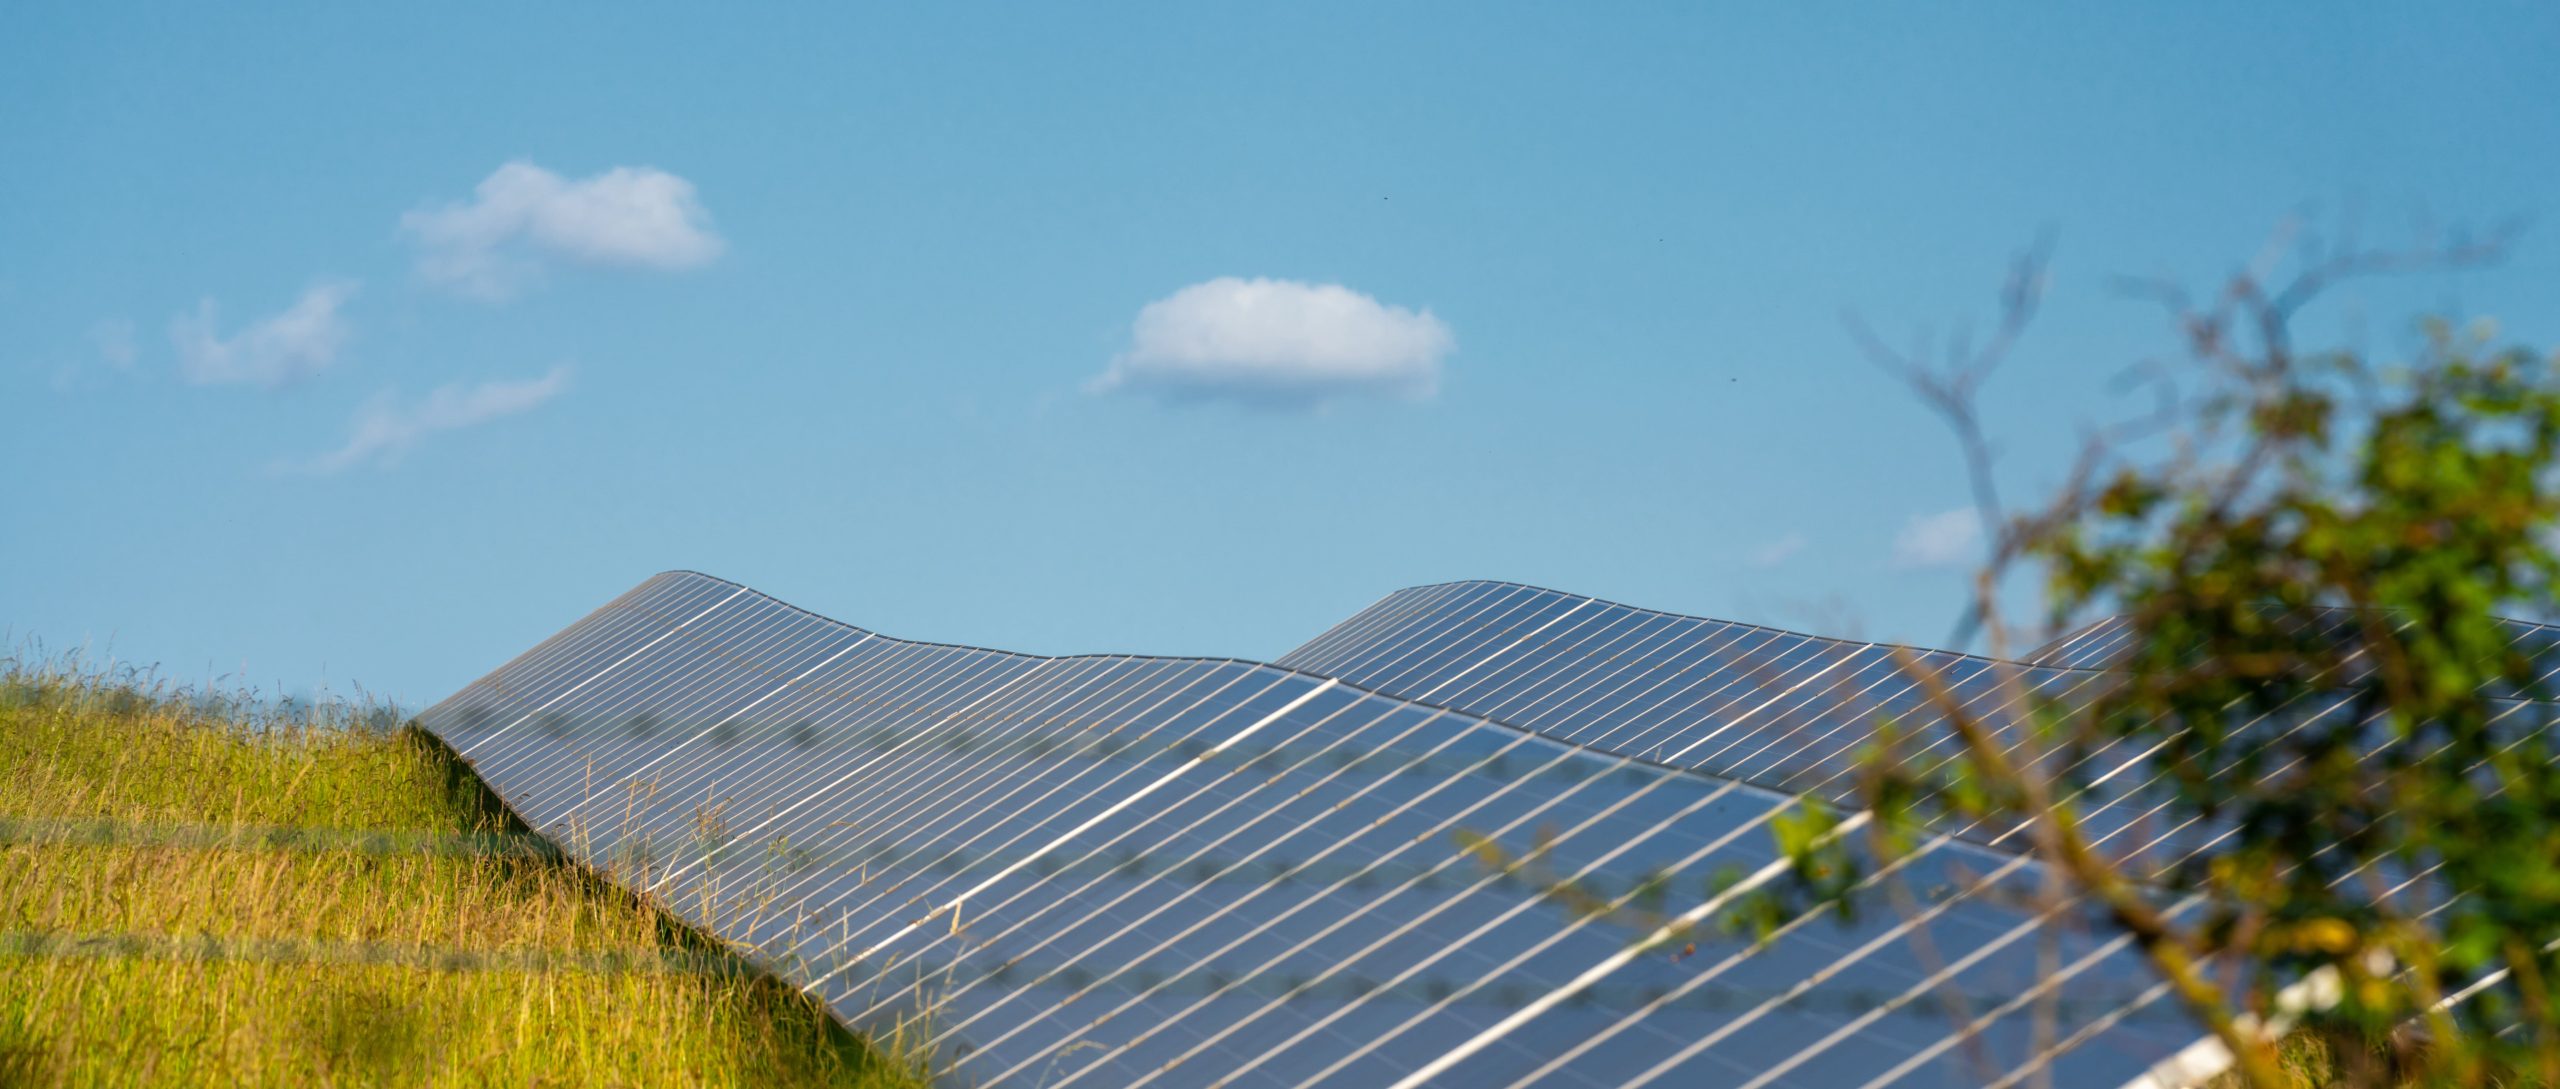 ペロブスカイト太陽電池の将来性